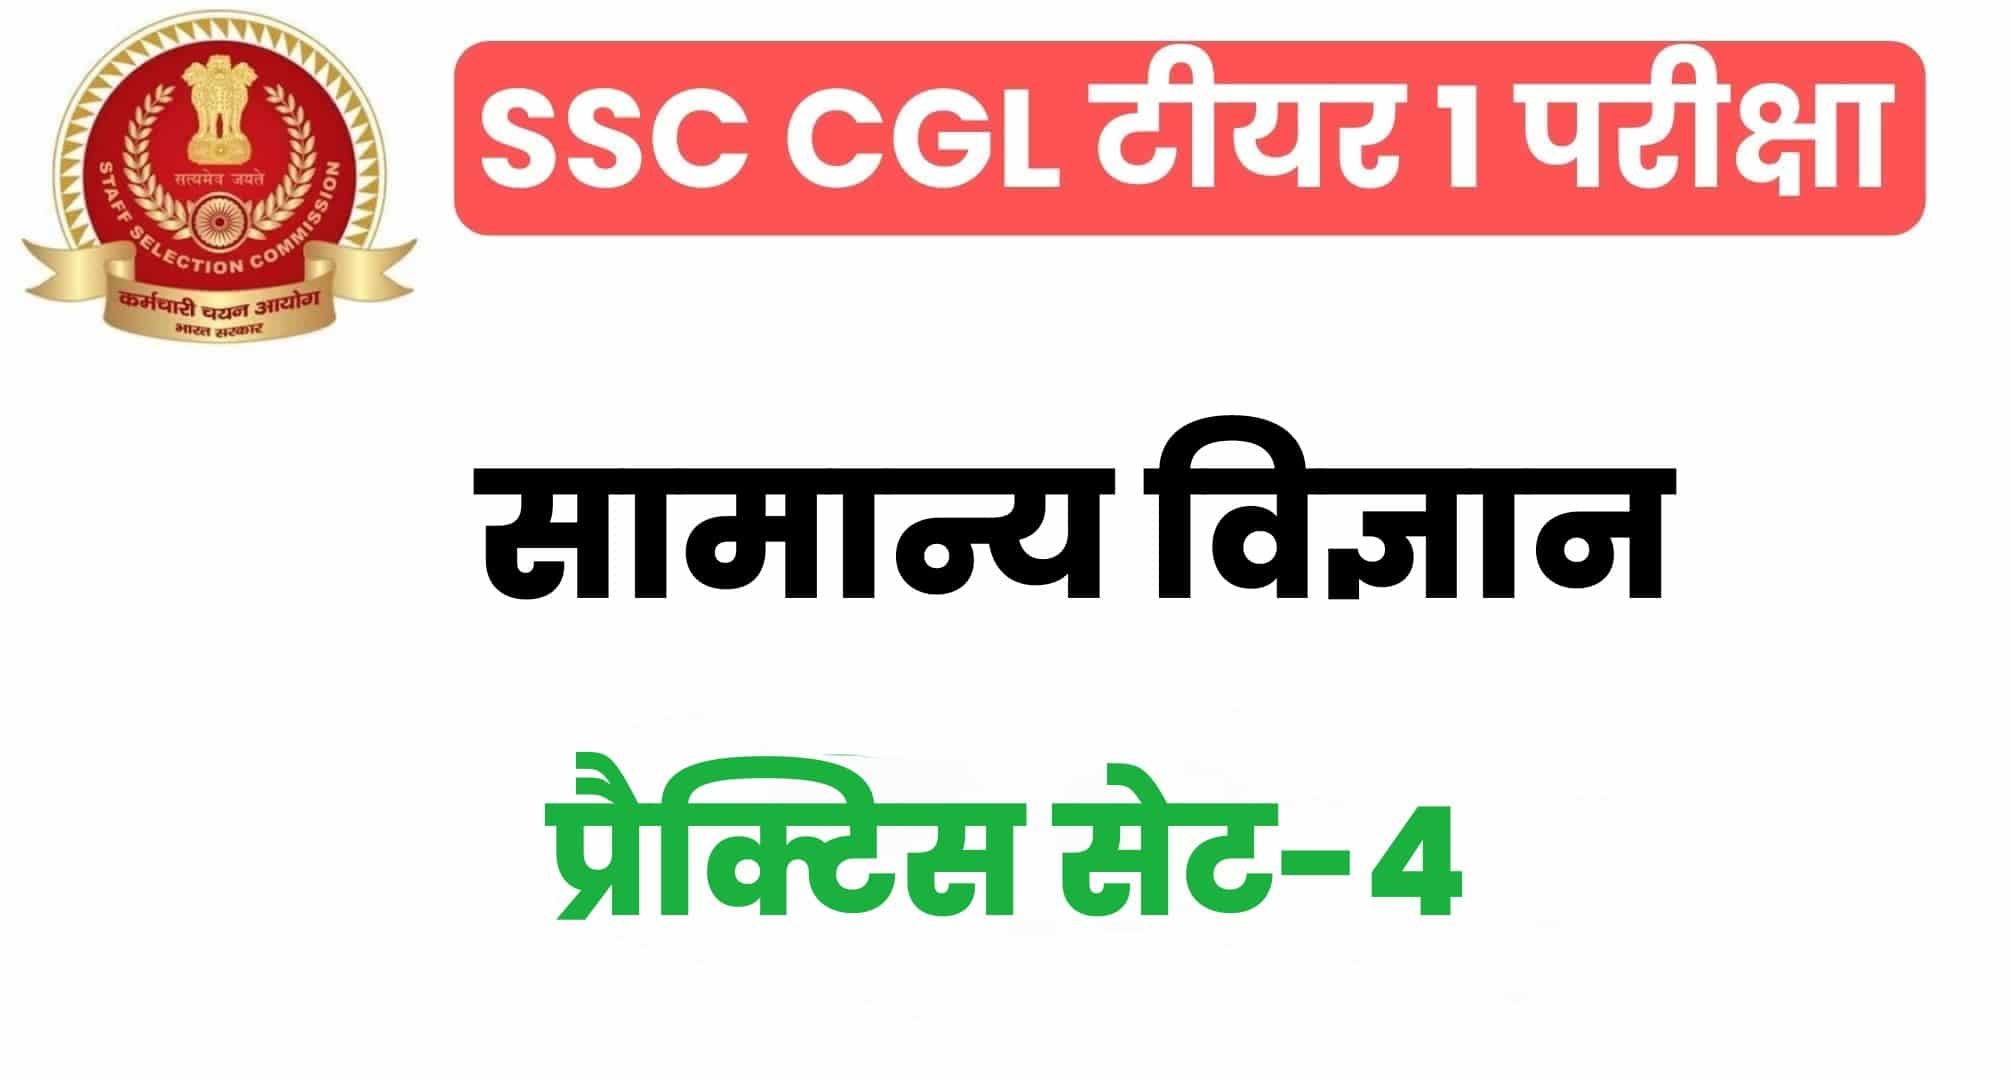 SSC CGL General Science प्रैक्टिस सेट 4 : सामान्य विज्ञान के 25 महत्वपूर्ण प्रश्न, परीक्षा से पहले पढ़ लें